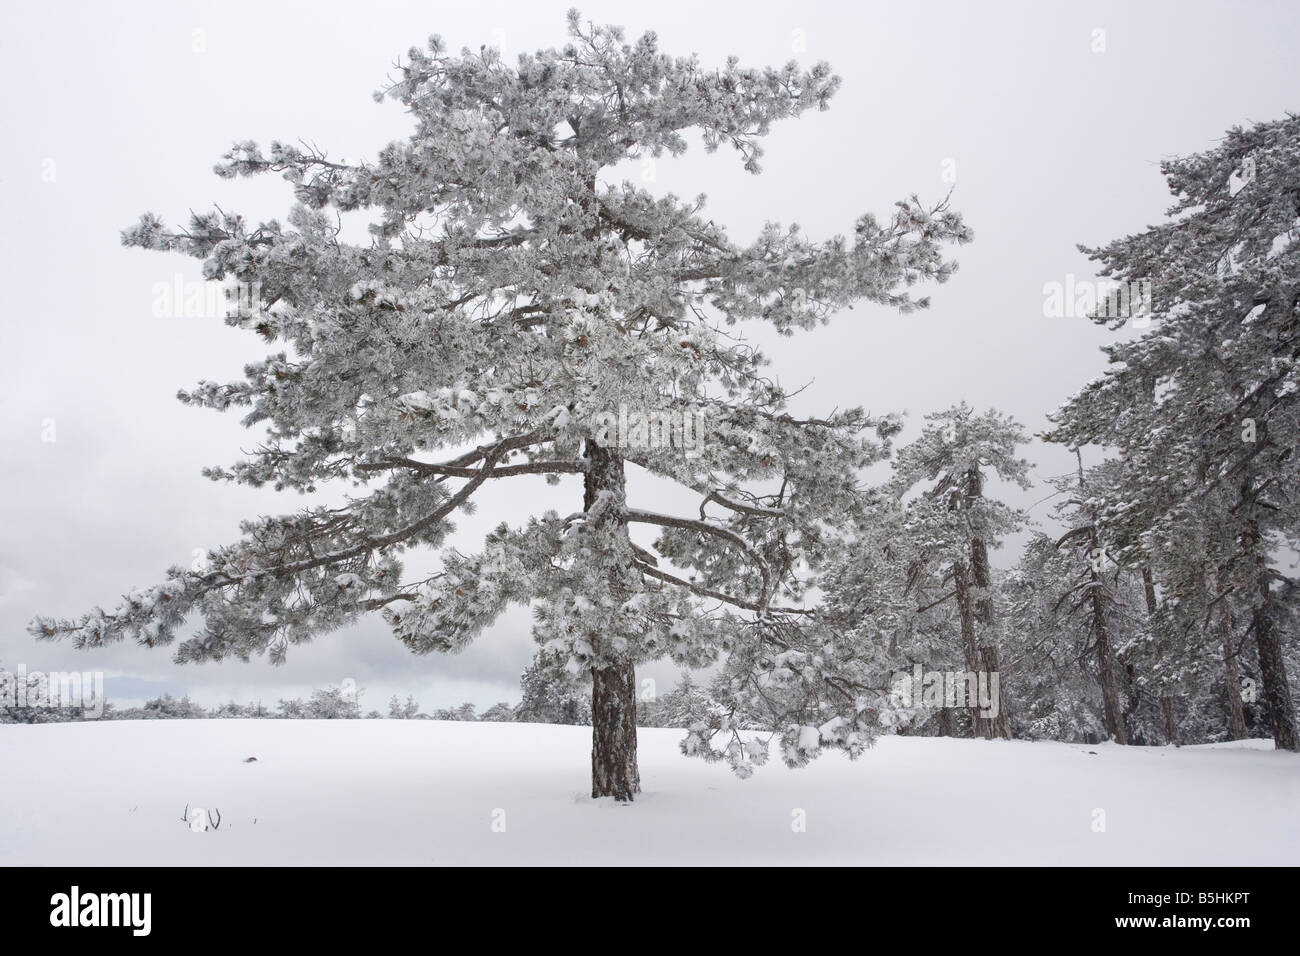 Pino negro de Pinus nigra ssp. pallasiana bosque en las altas montañas de Troodos sur de Chipre a finales del invierno, la nieve Foto de stock